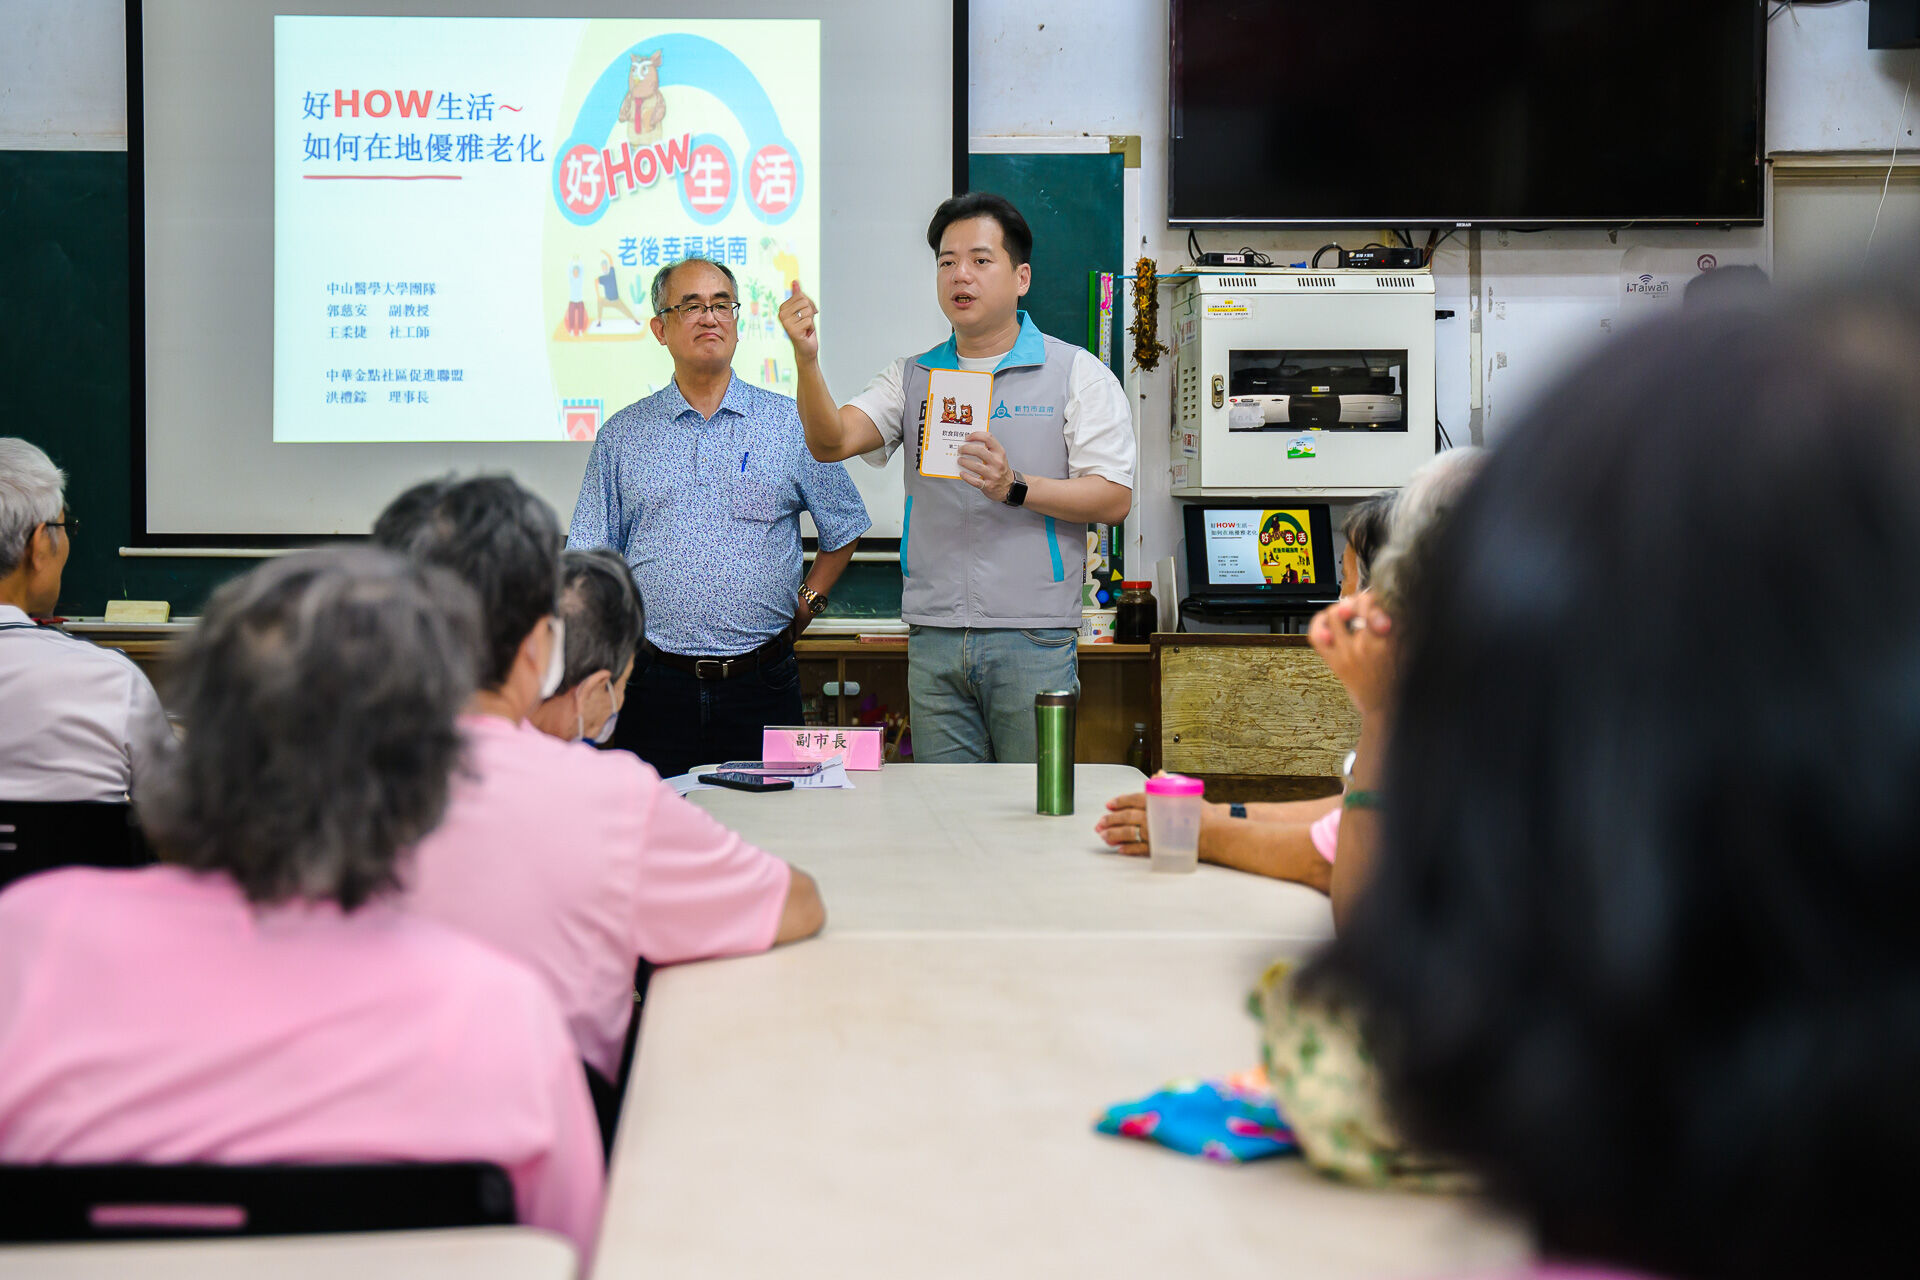 竹市府以「好How生活-老後幸福指南」1書為主軸，共計培訓57位種子教師，透過課程讓長輩樂活在新竹。